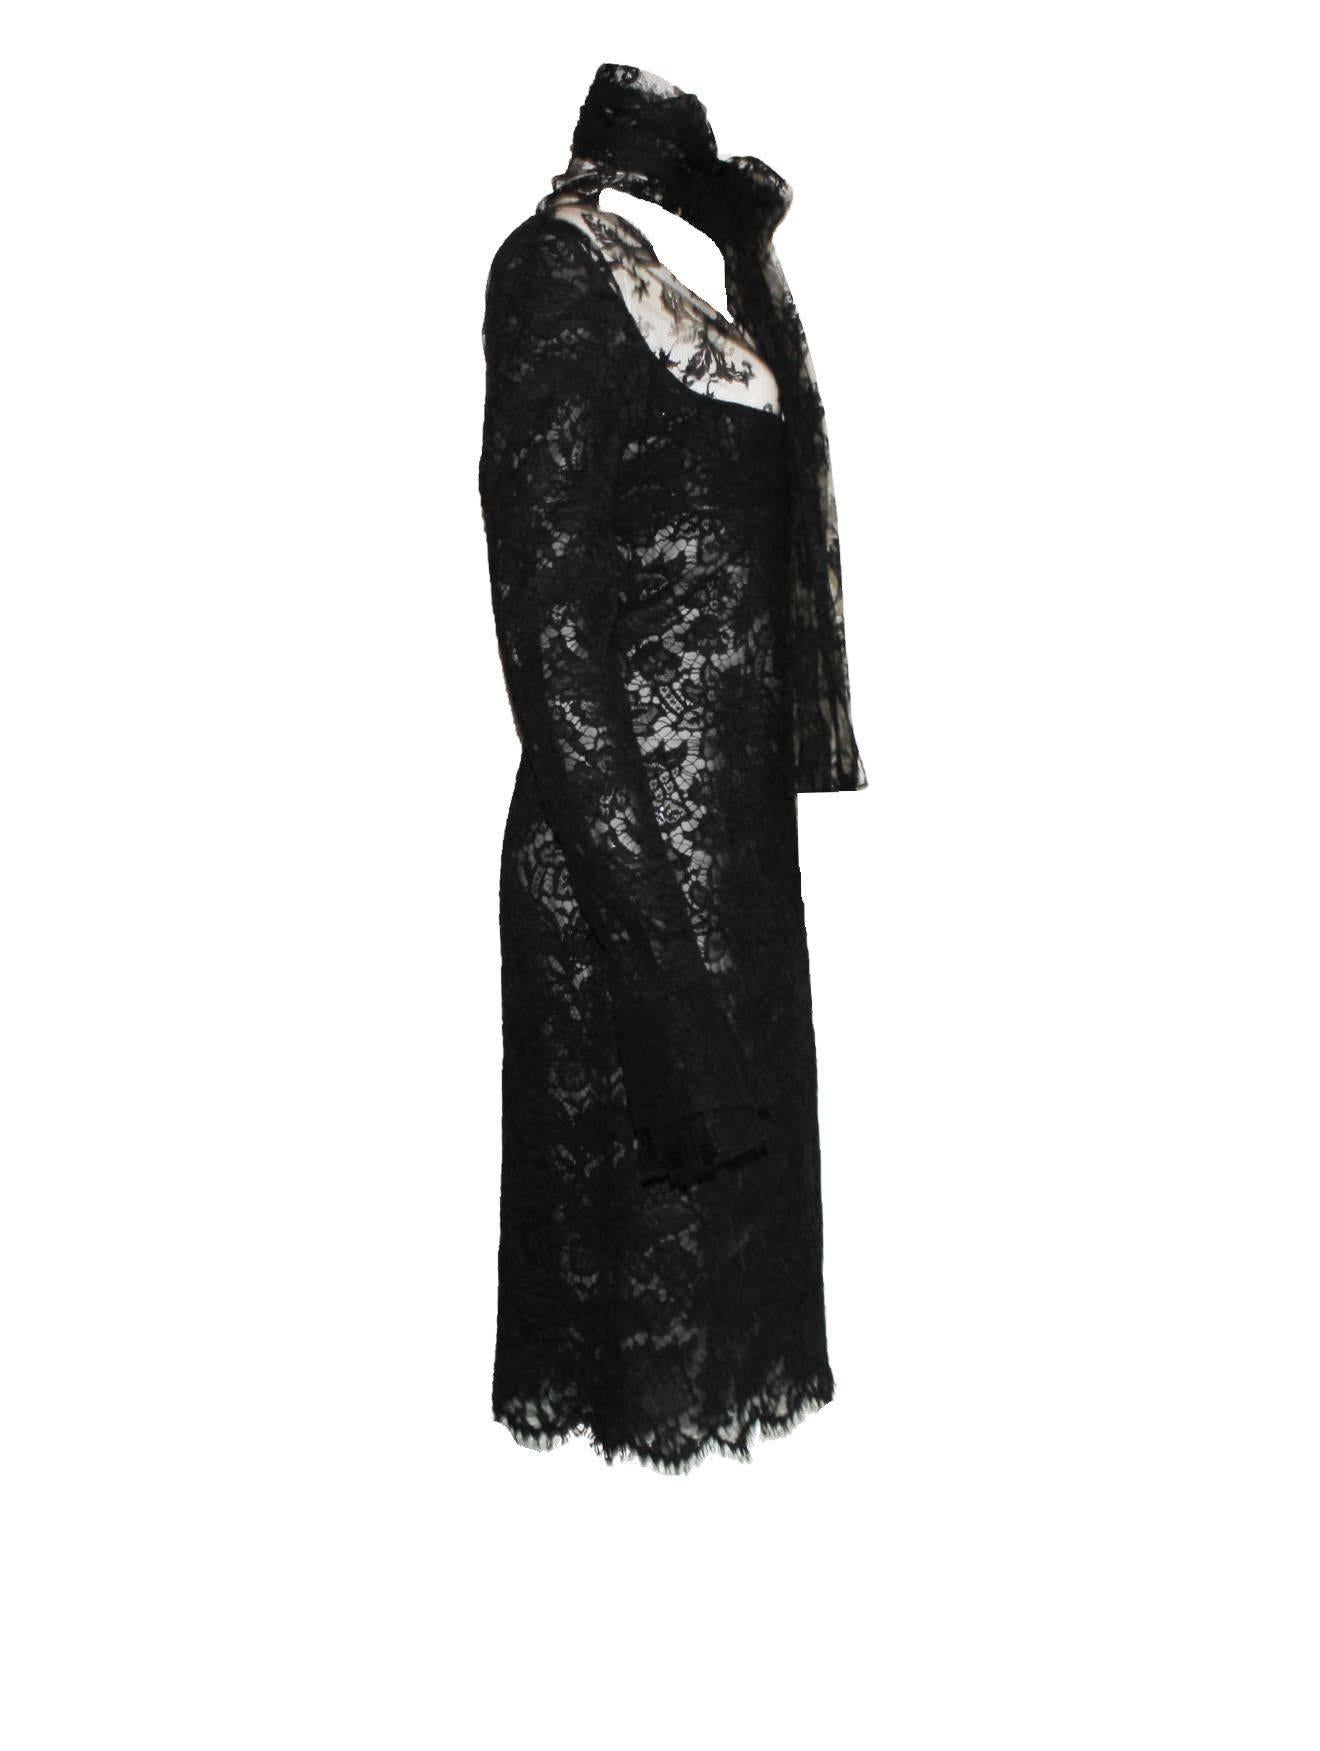 Spitzenkleid, entworfen von Tom Ford für Yves Saint Laurent 
Kollektion FW 2002
Seltenes Stück
Feinste schwarze Guipure-Spitze 
Auf der Rückseite mit schwarzem Mesh-Tüll gefüttert
Gesehen in der AD-Kampagne, auf dem Laufsteg und bei Carine